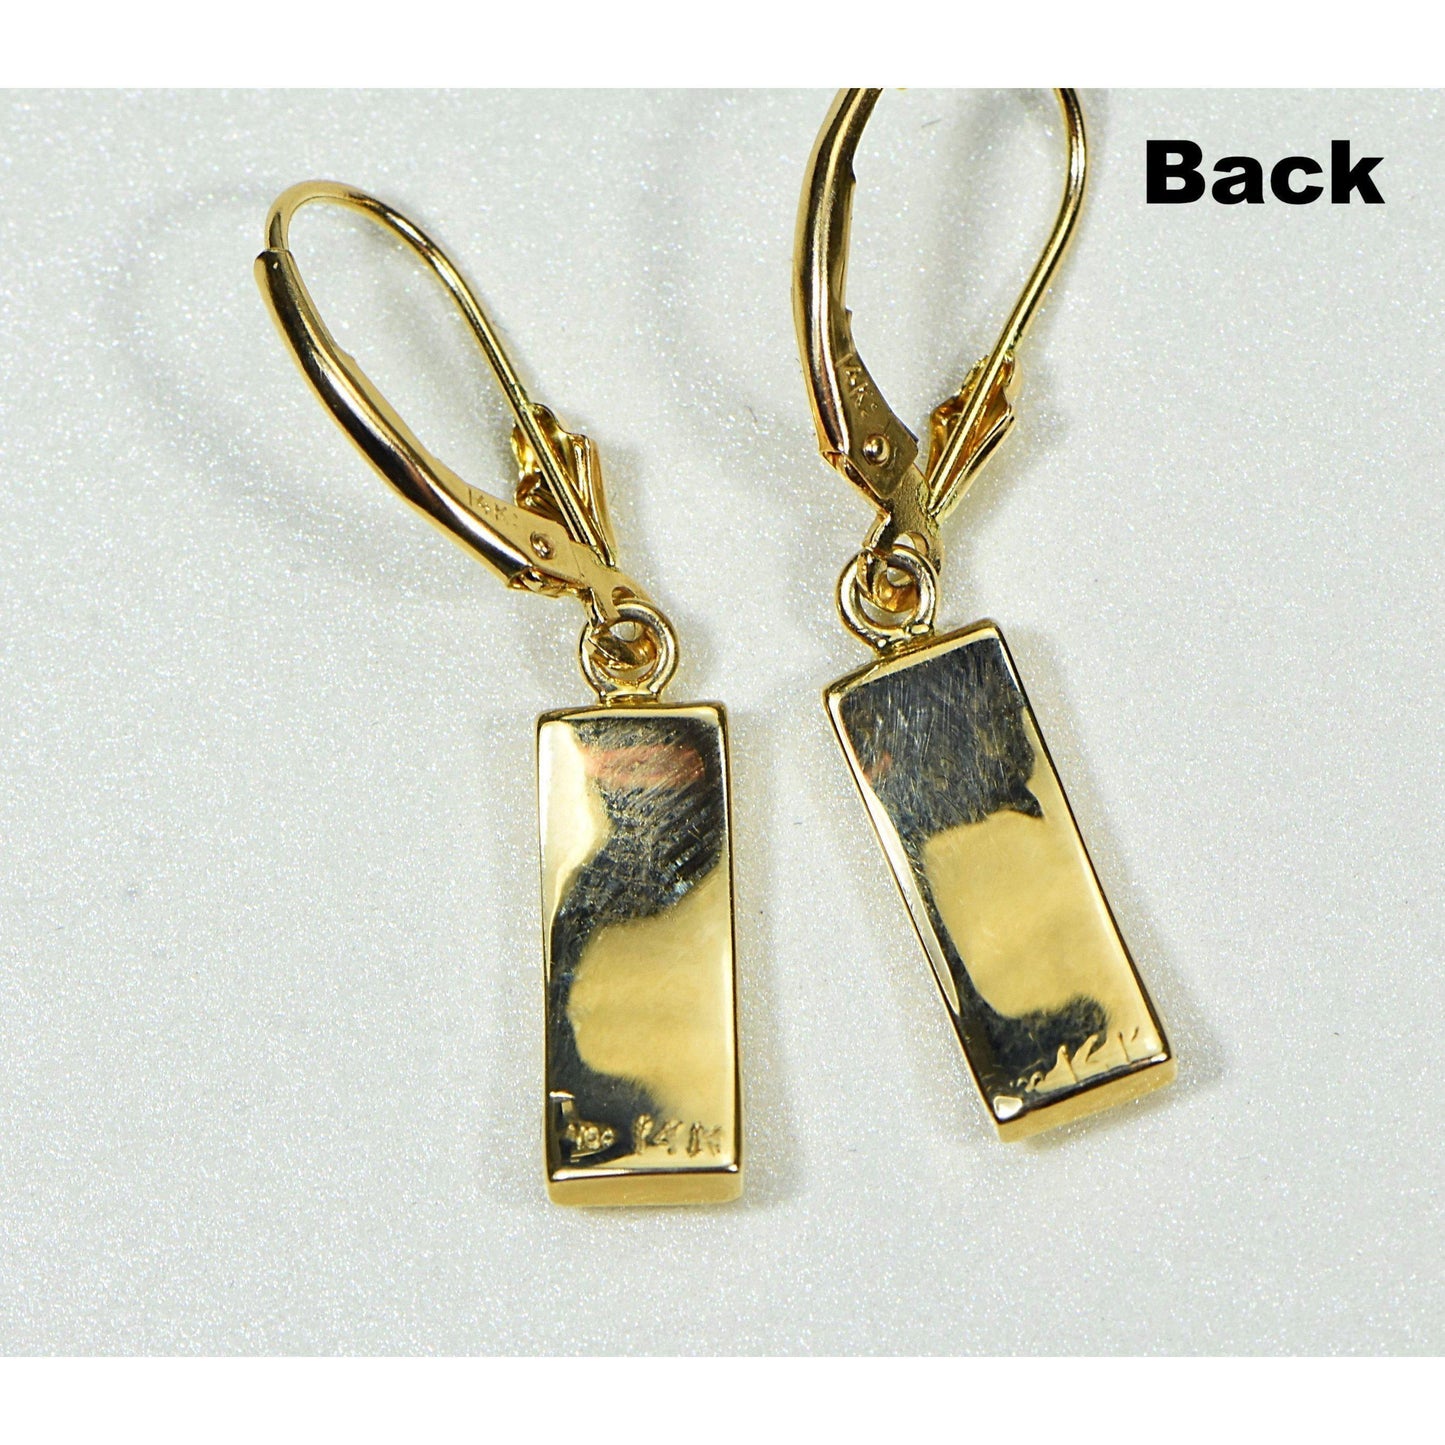 Orocal Gold Quartz Earrings Dangles EB5.5MMQ/LB-Destination Gold Detectors